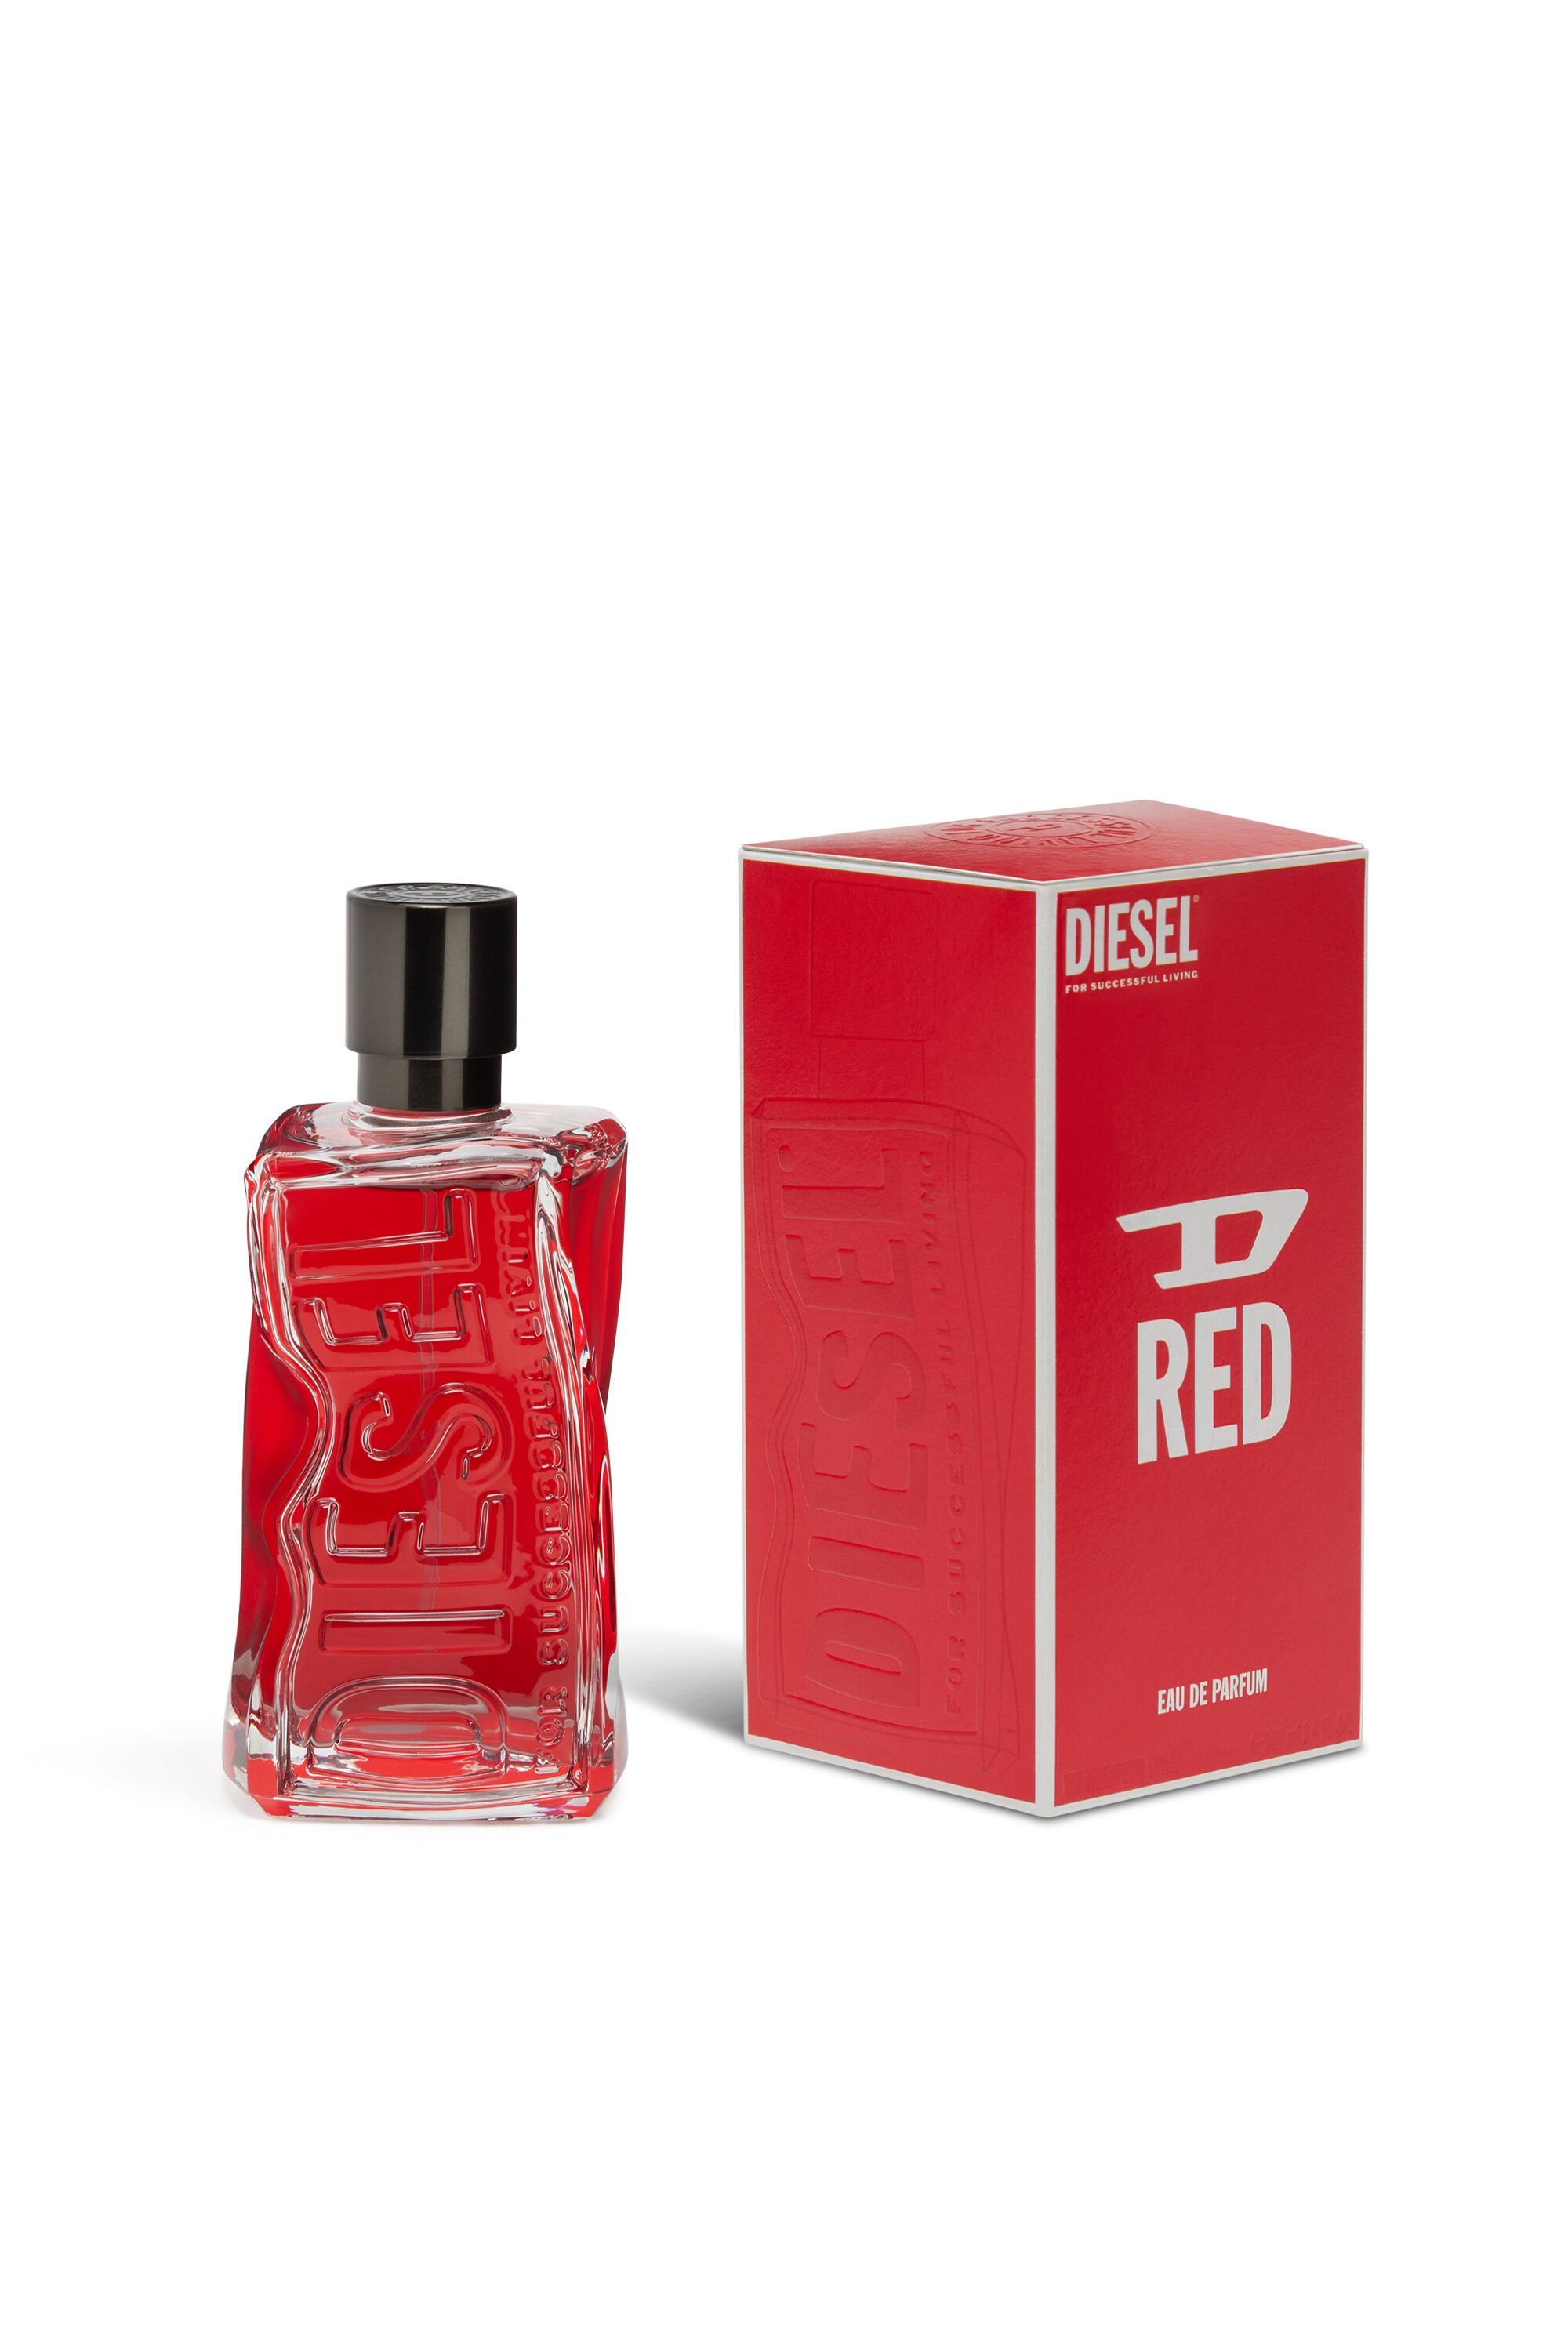 Diesel - D RED 50 ML, Hombre D RED 50ml, Eau de Parfum in Rojo - Image 2